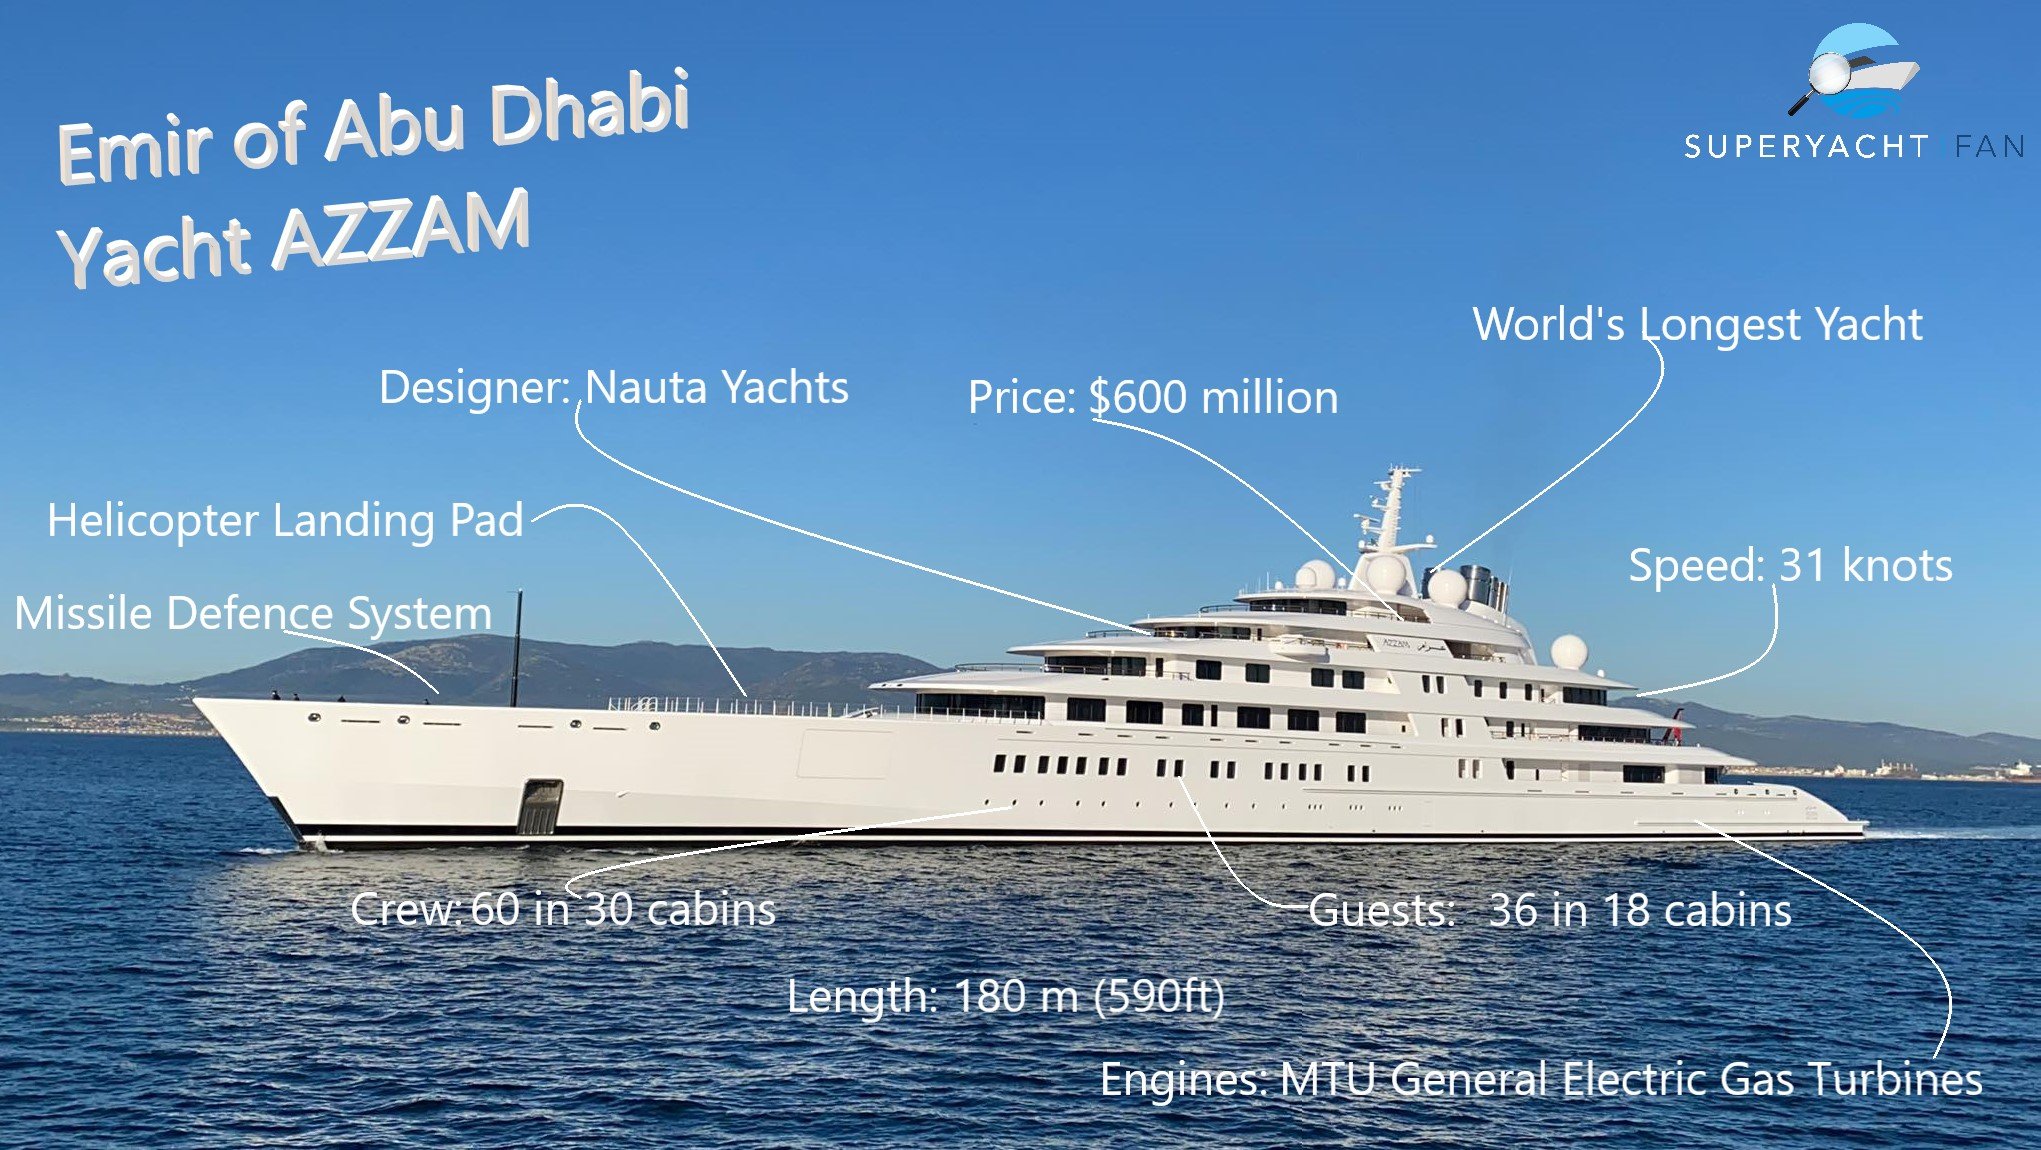 AZZAM Yacht Emir of Abu Dhabi